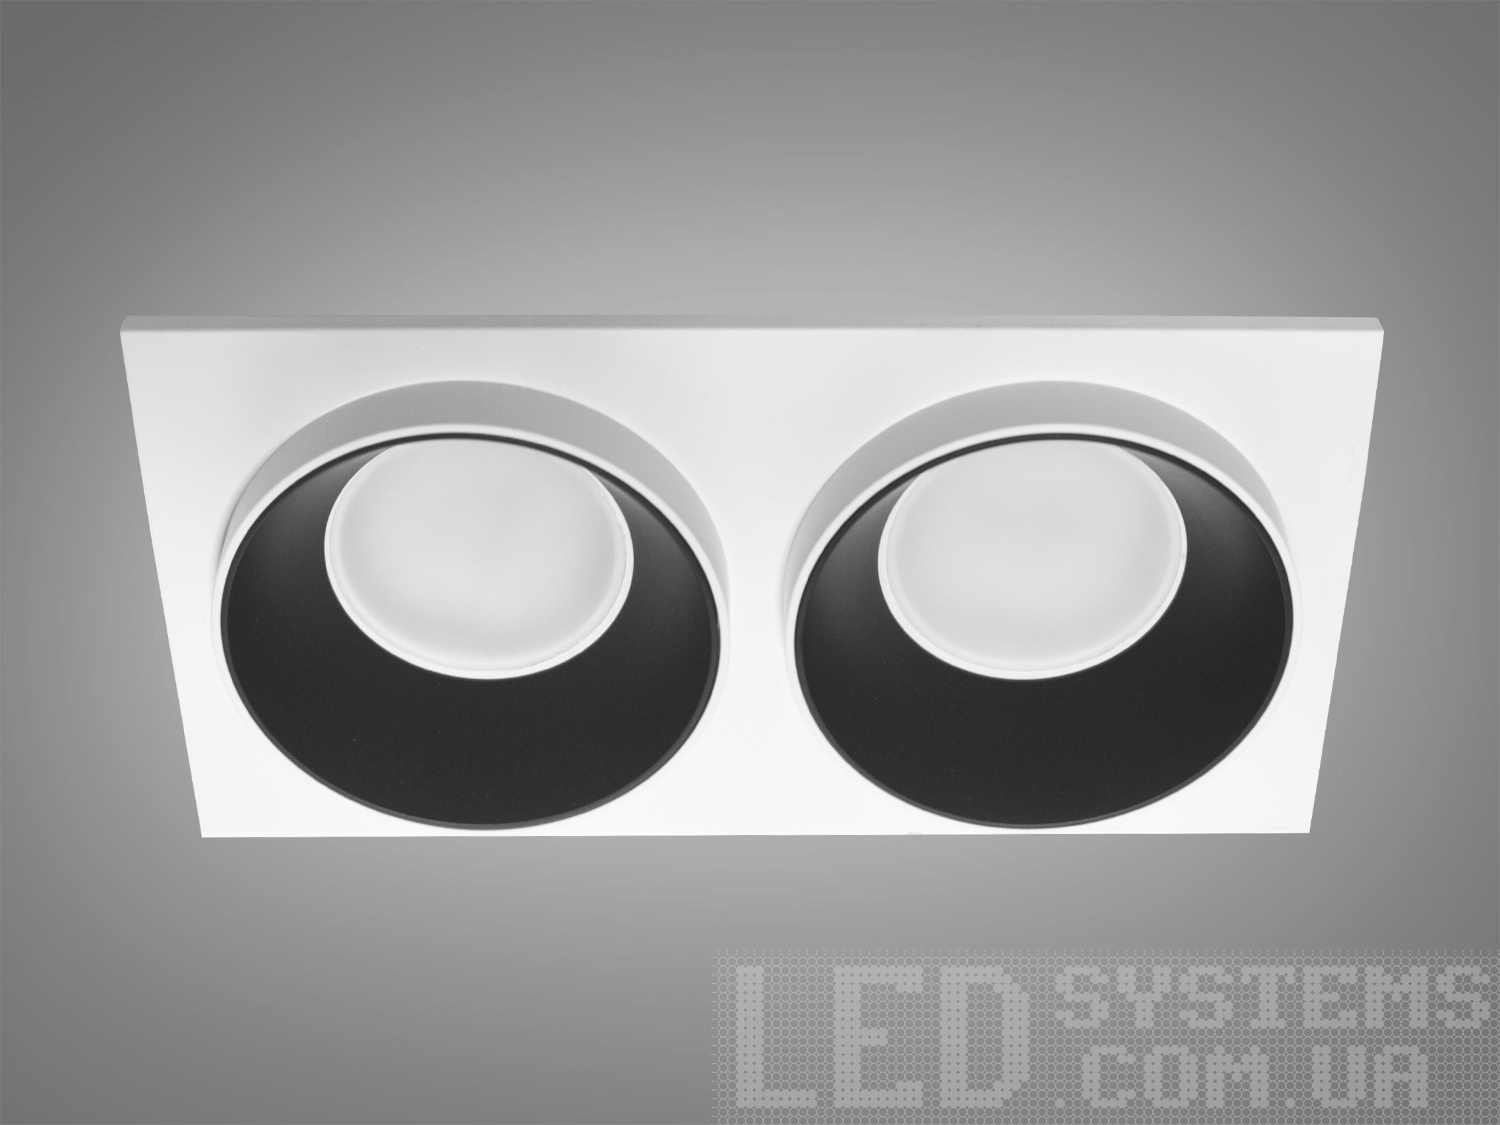 Нова серія точкових світильників дозволить зробити Вашу квартиру стильною та сучасною. Дані світильники ідеально підходять для світлодіодних ламп, які забезпечують найкращі параметри освітлення та енергозбереження, дозволяючи дизайнеру інтер'єру можливість для креативу. 
Точковий світильник - це спеціальний вбудований світильник, який використовується для спрямованого або загального підсвічування певних ділянок Вашої квартири. Їх застосовують на кухні, у ванній кімнаті, для освітлення сходів та у житлових кімнатах. При рівномірному розподілі різних джерел світла (наприклад: люстра в центрі кімнати + точкові світильники по краю стелі) ви можете досягти ефекту відсутності тіні і зорово збільшити простір кімнати. Куди б Ви не подивилися, точкові світильники будуть висвітлювати простір перед Вами та всі предмети, що Вас оточують. 
Алюмінієві світильники не схильні до корозії, добре відводять тепло від лампи. 
Лампа до комплекту не входить.